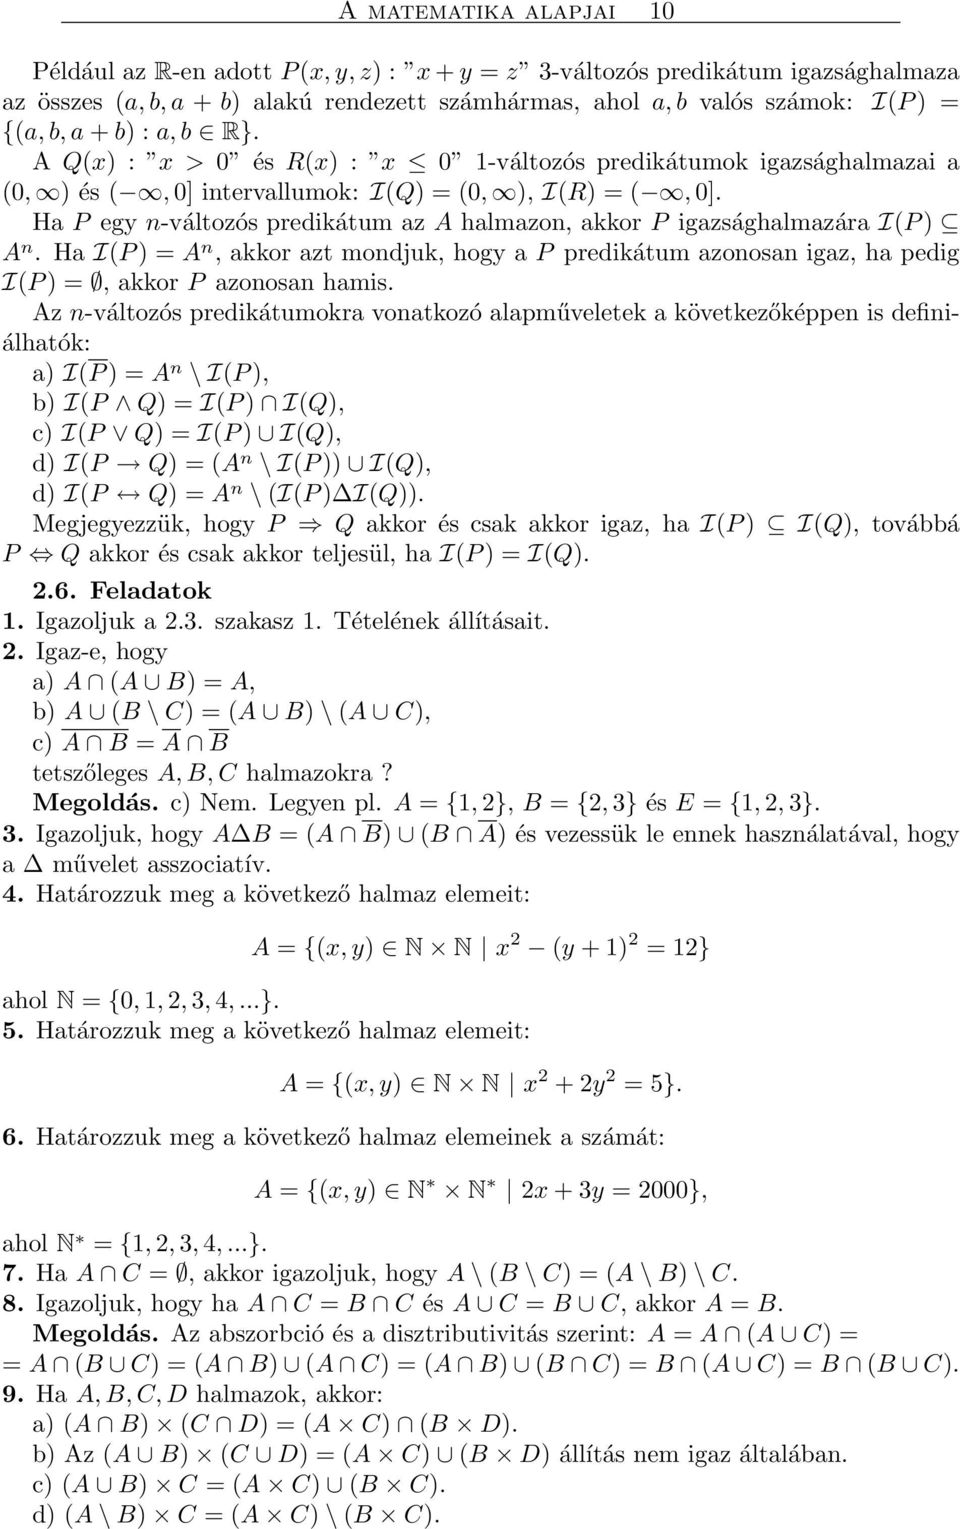 A matematika alapjai 1 A MATEMATIKA ALAPJAI. Pécsi Tudományegyetem, PDF  Free Download